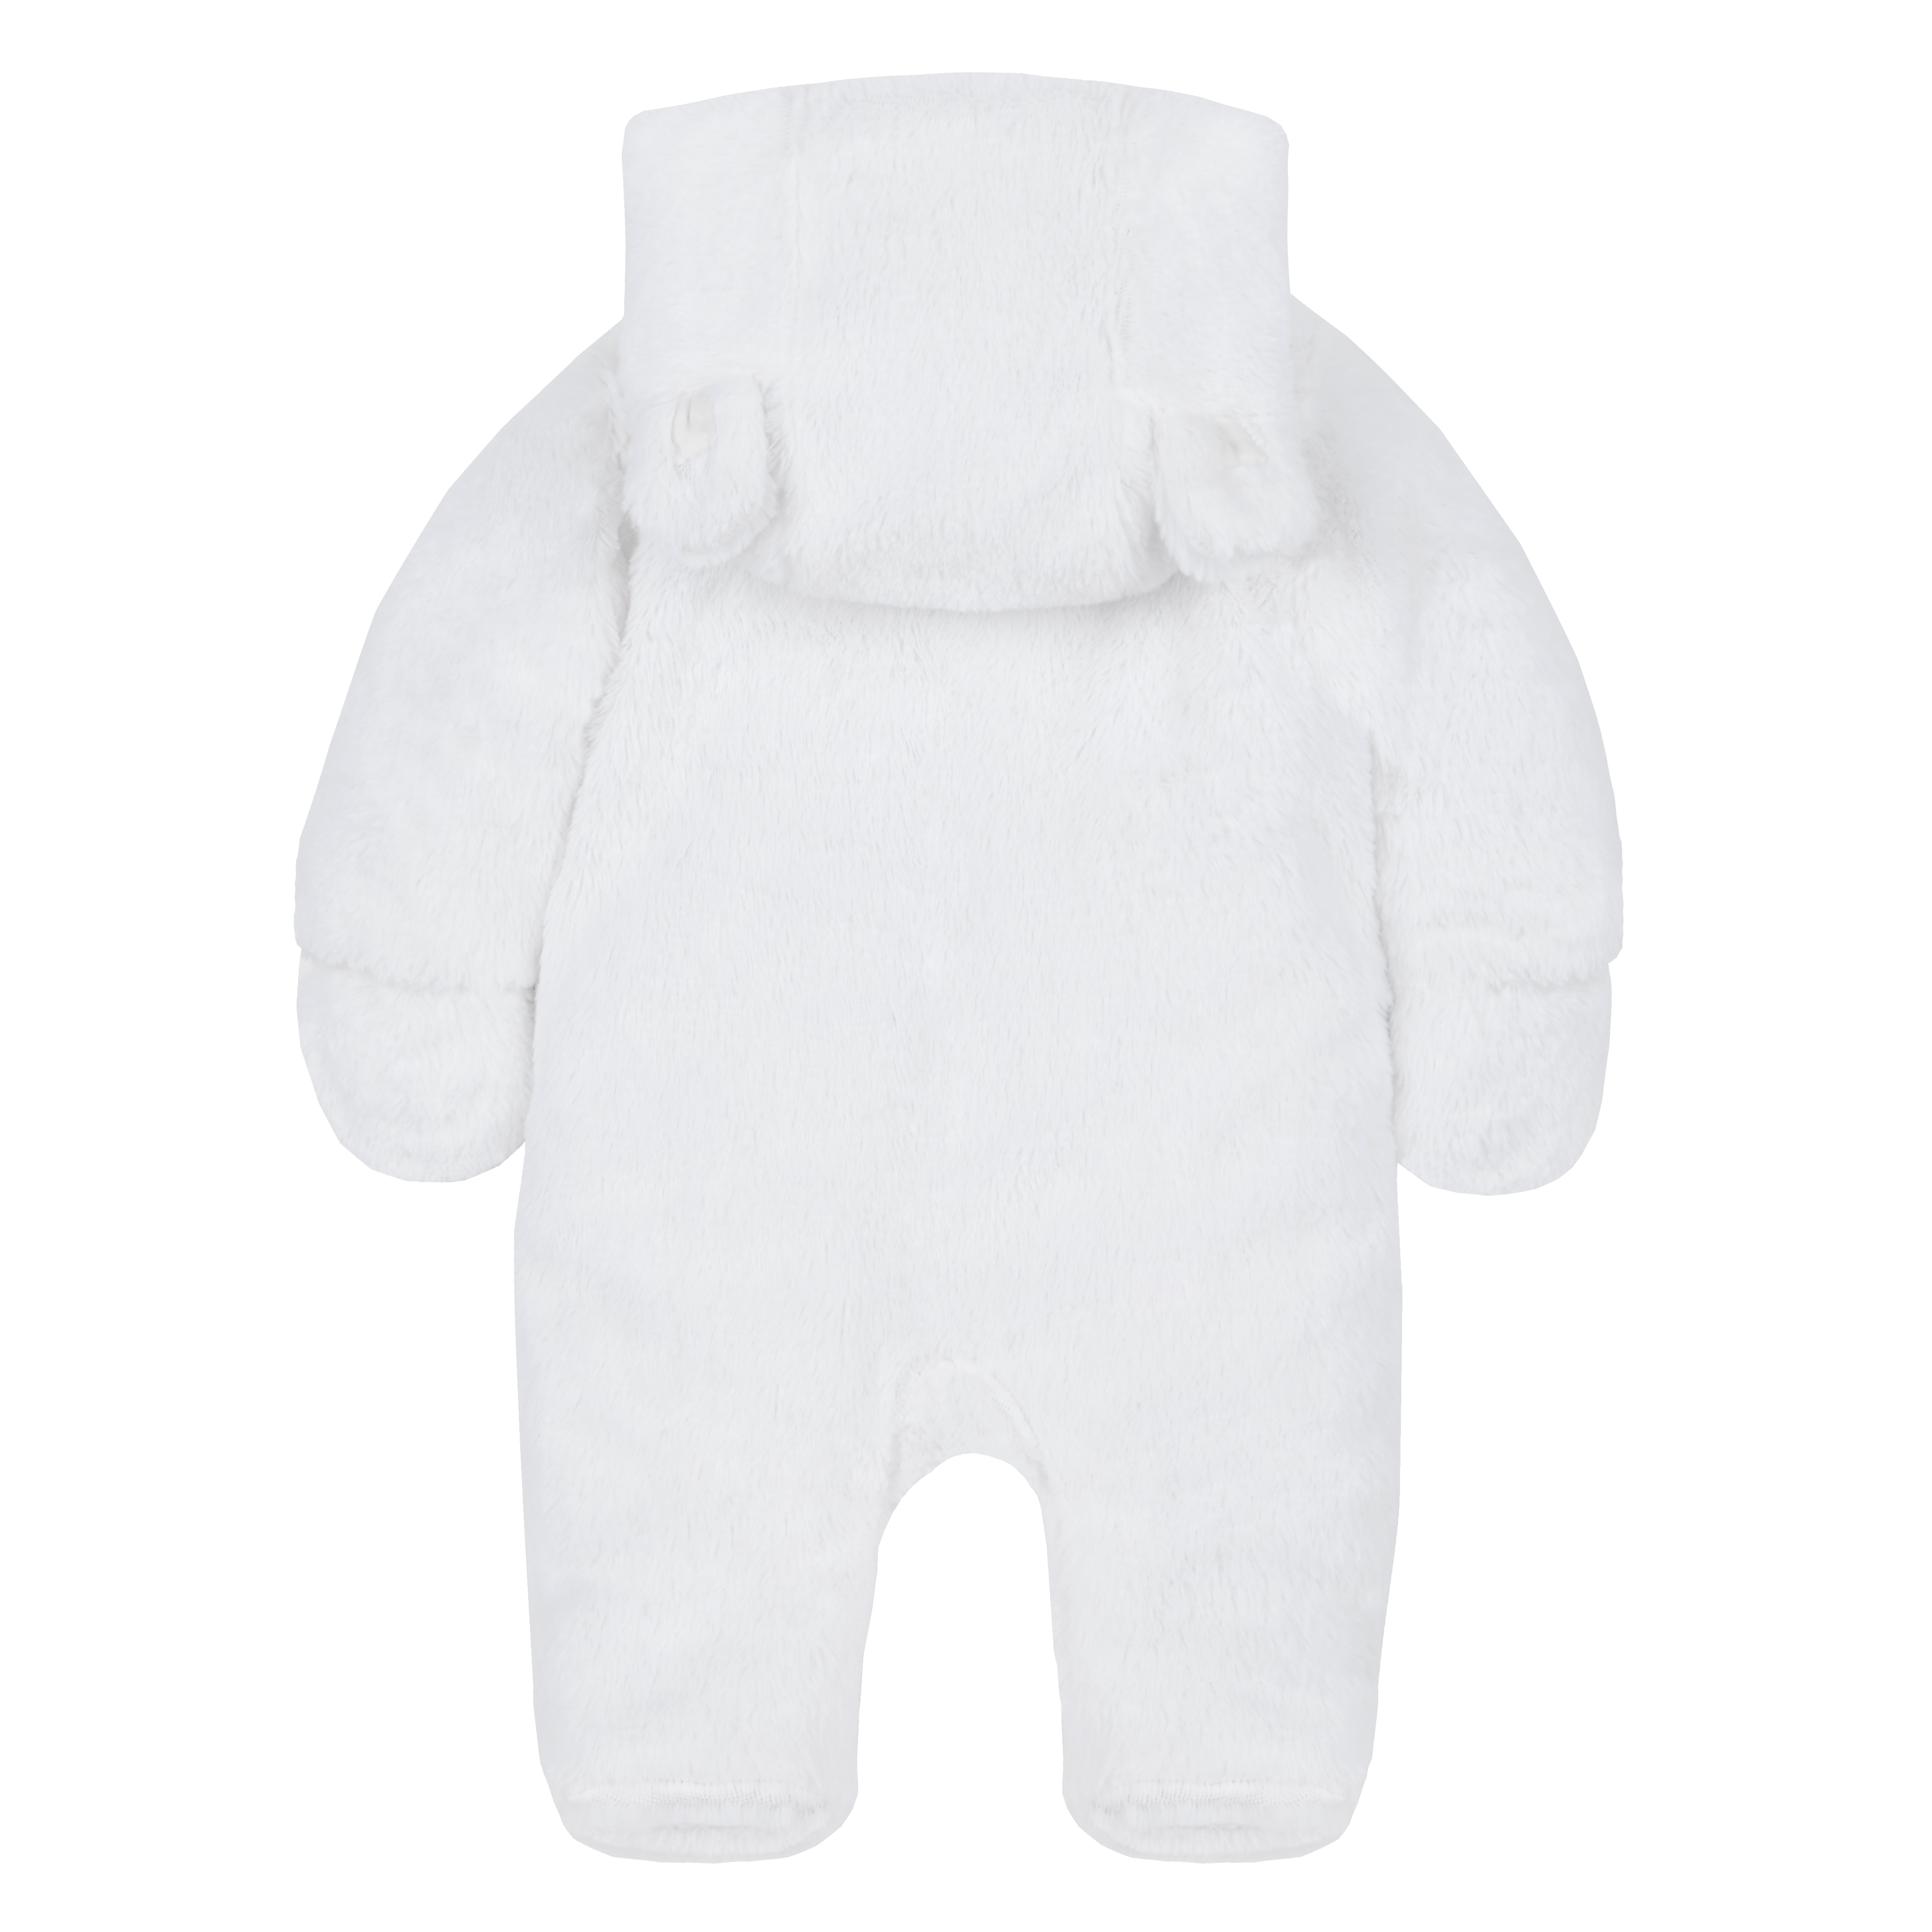 newborn pram suit